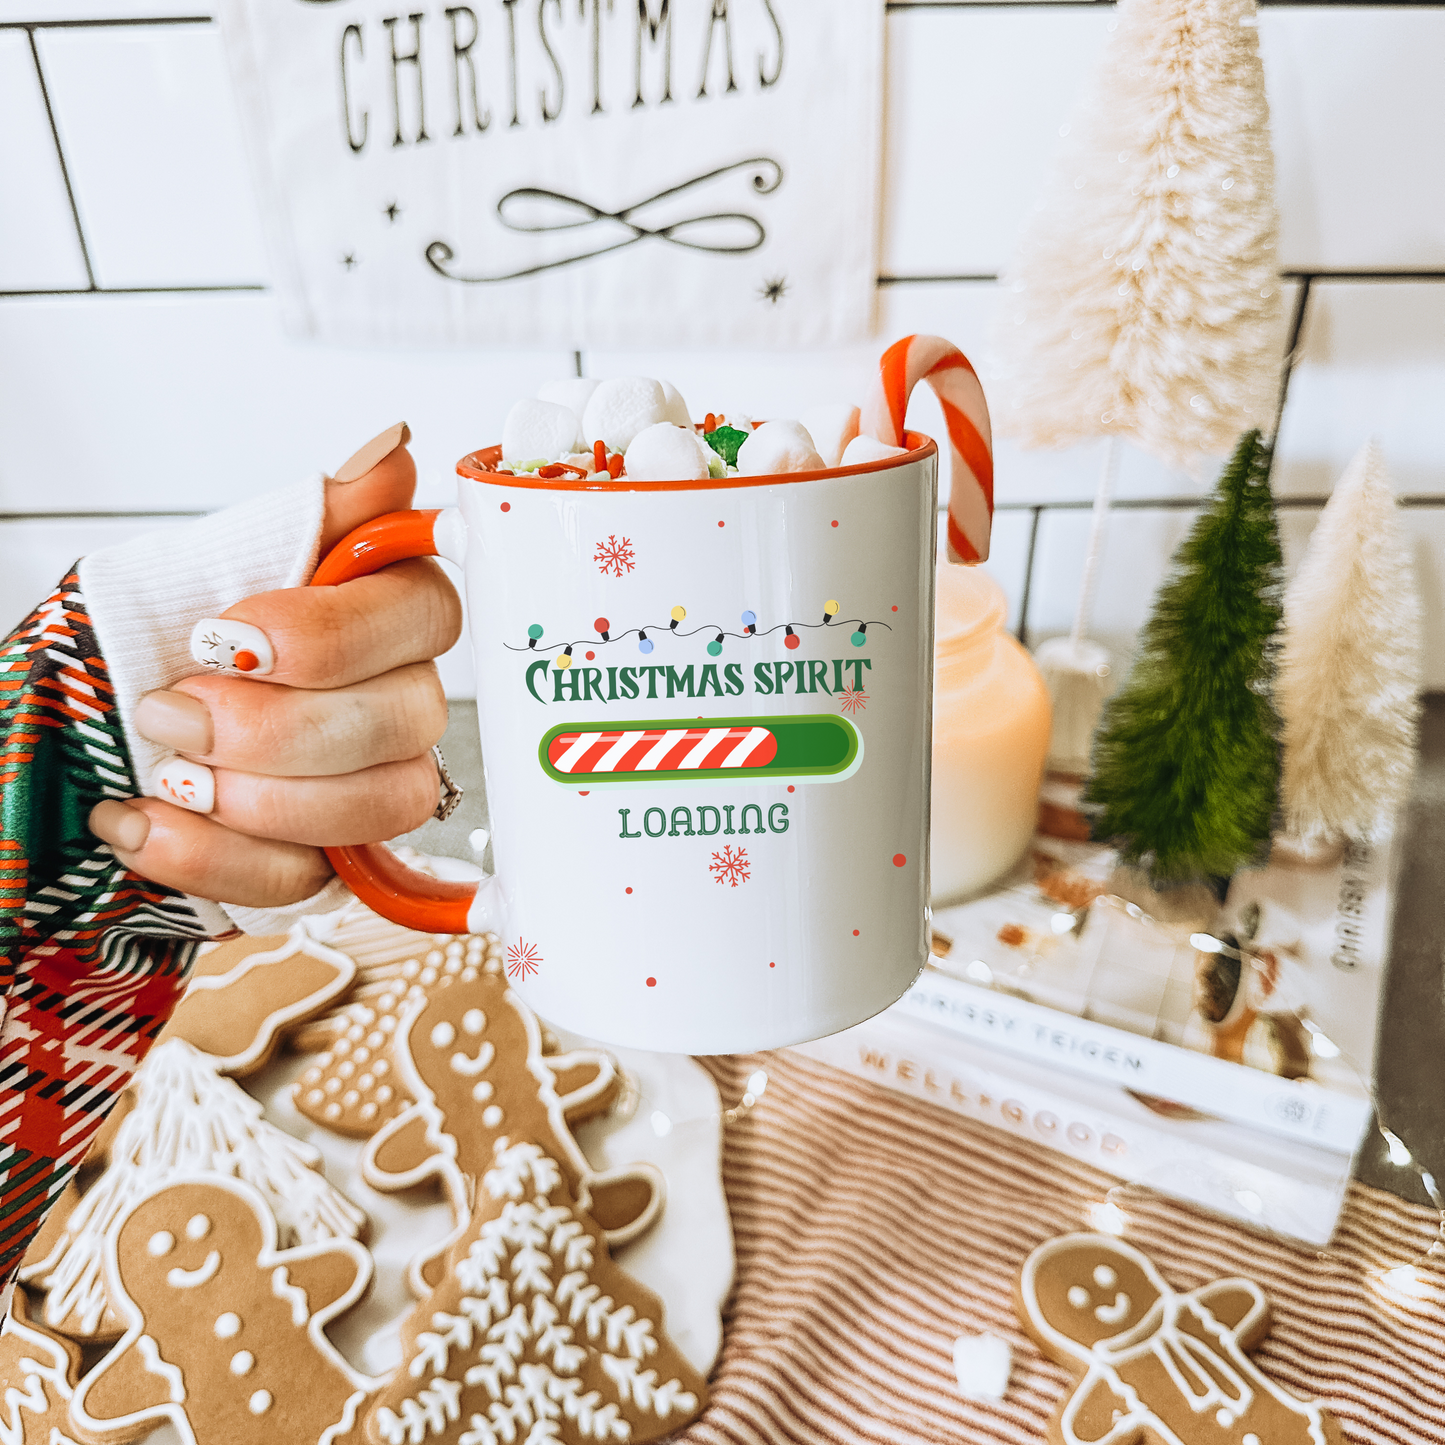 "Christmas Spirit Loading" Coffee Mug